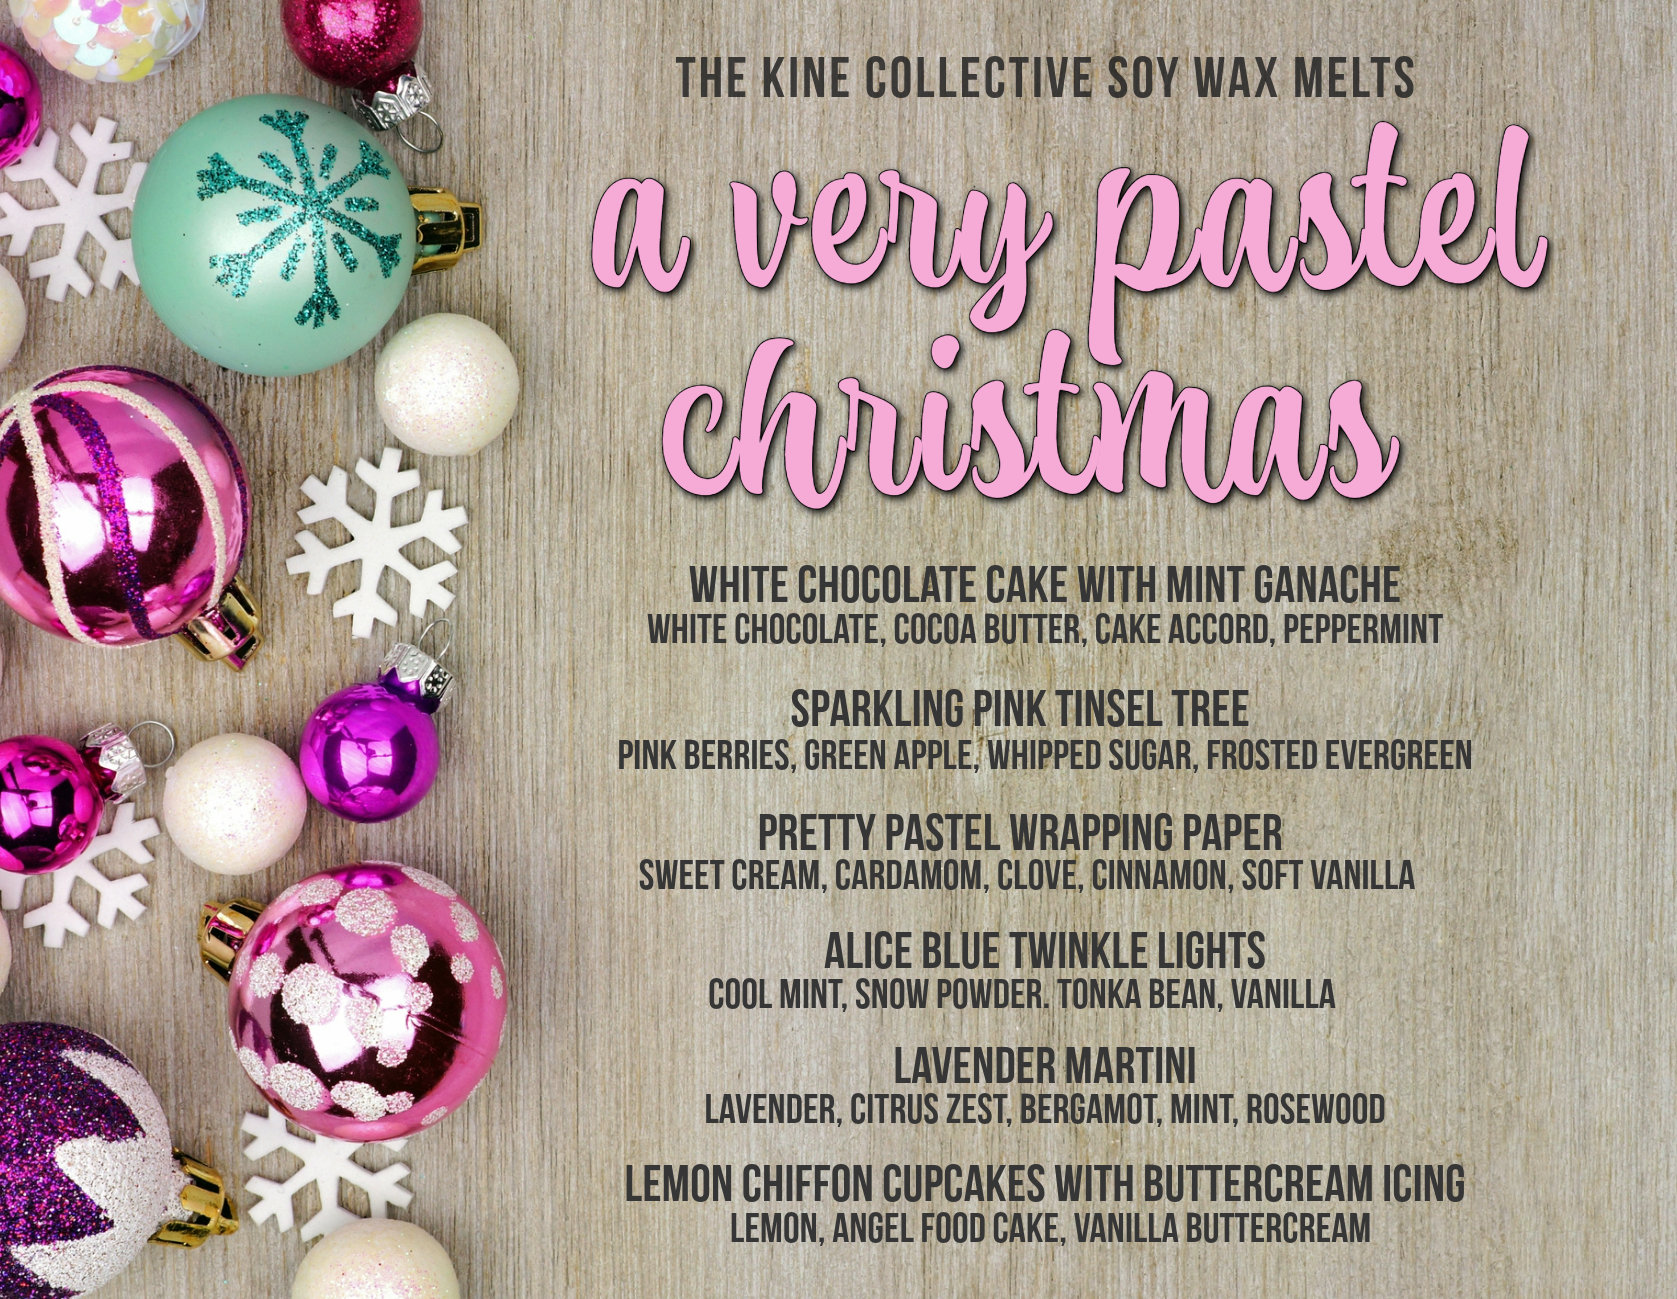 Wax Melt: Lavender Pine – Kimberly English Art